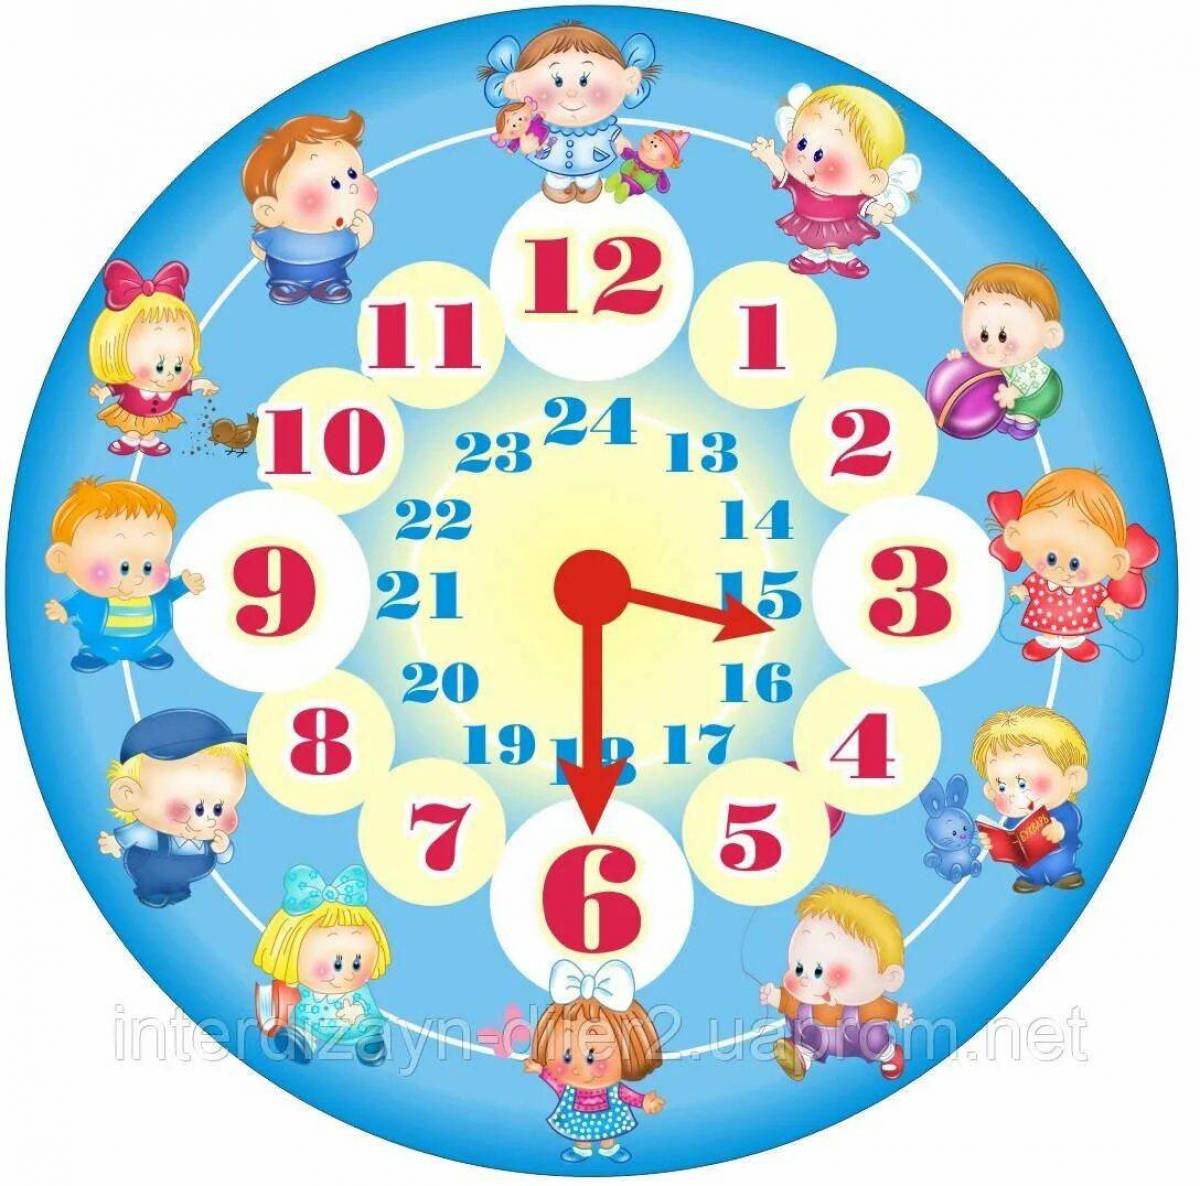 Часы для ребенка в детский сад. Часы для детского сада. Часы для дошкольников. Часы режим дня для дошкольников. Часы распорядок дня для детей.